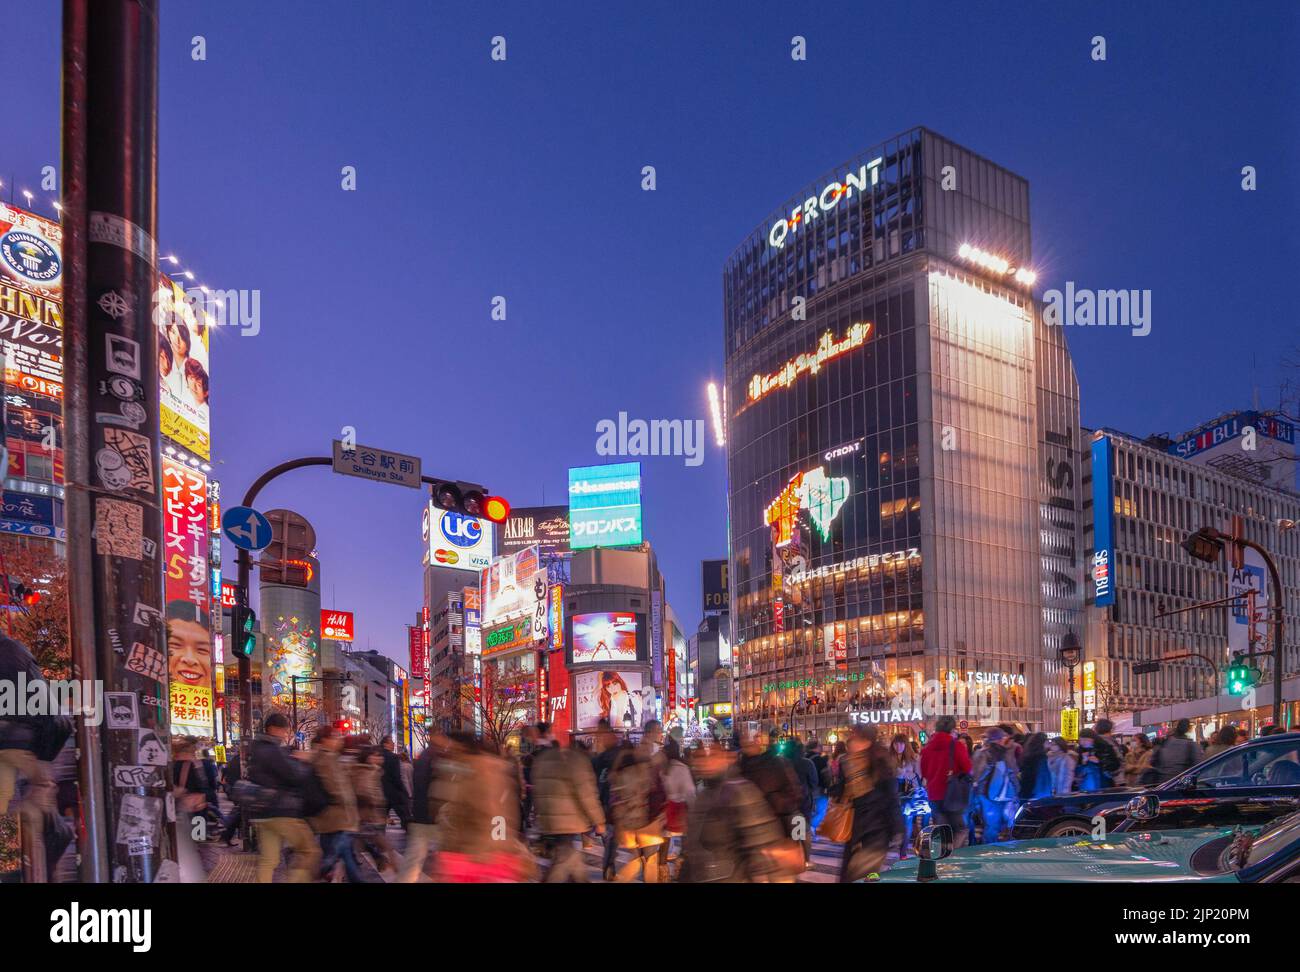 Diciembre 24, 2012 - TOKIO, JAPÓN: peatones cruce Shibuya, uno de los pasos de peatones más concurrido en el mundo. Foto de stock